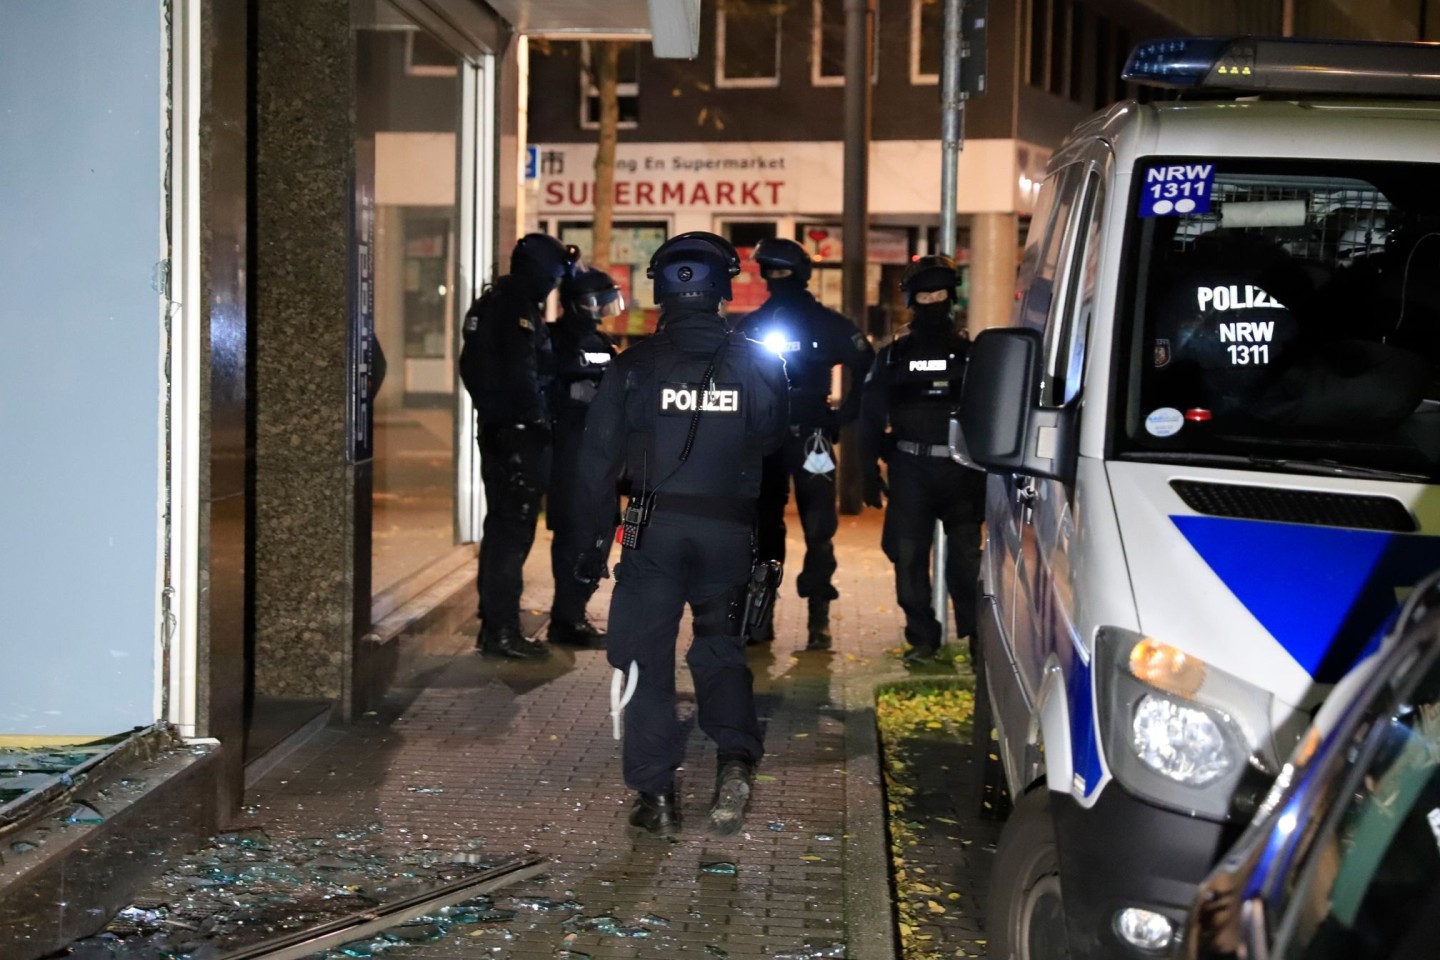 Großrazzia in Gelsenkirchen. Bei einem großen Einsatz gegen die Drogenkriminalität hat die Polizei in NRW insgesamt elf Objekte in mehreren Städten durchsucht.